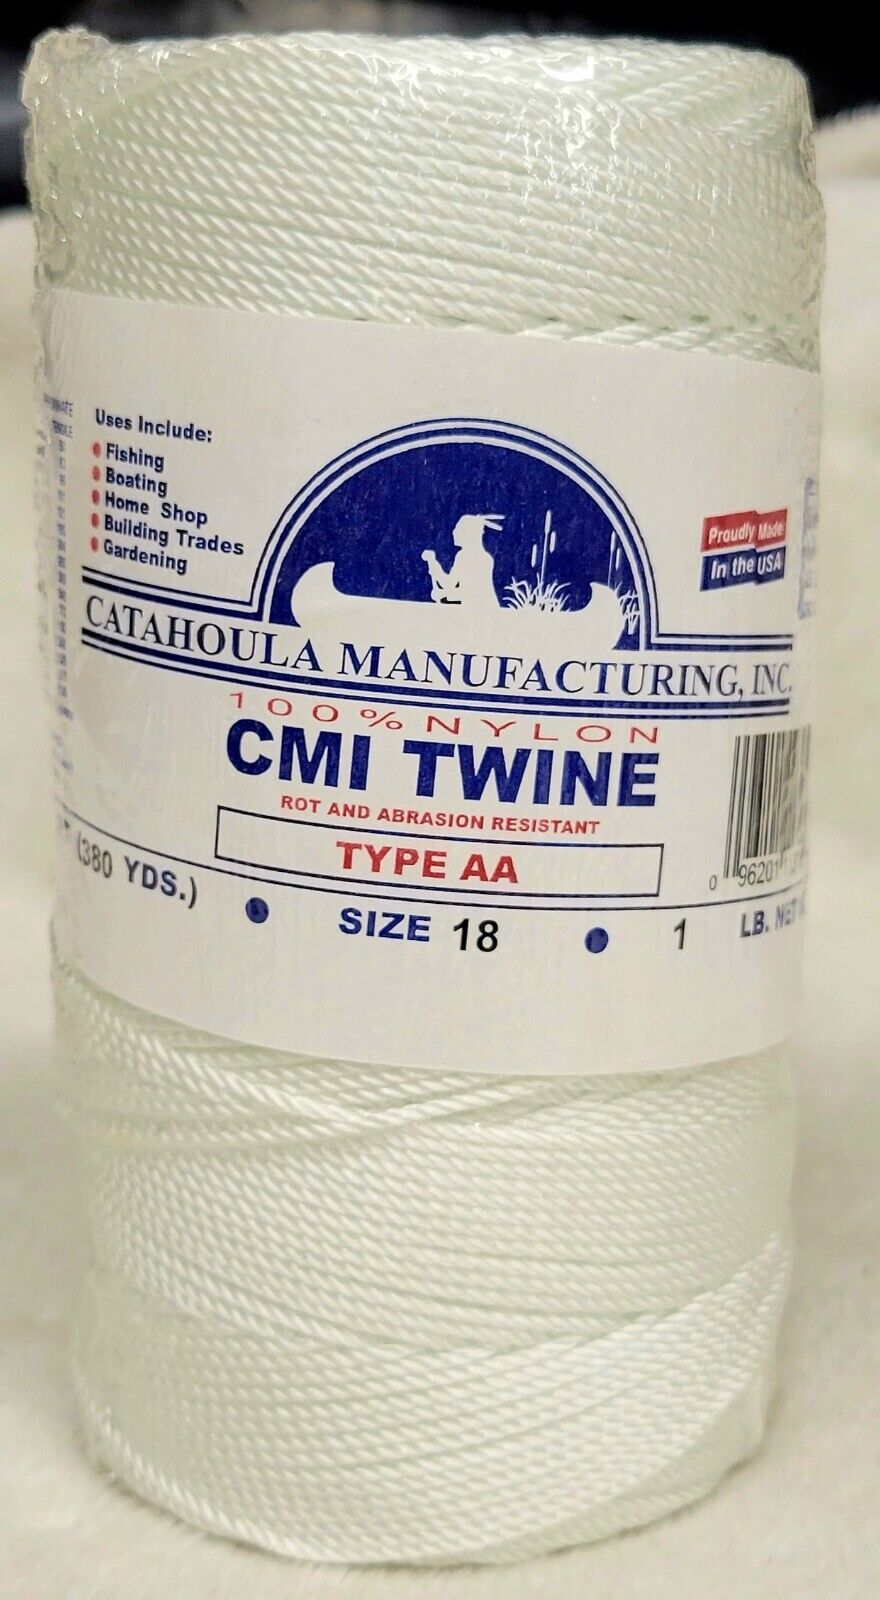 CMI Twine 100% Nylon   Type AA   Rot & Abrasion Resistant   1lb   White